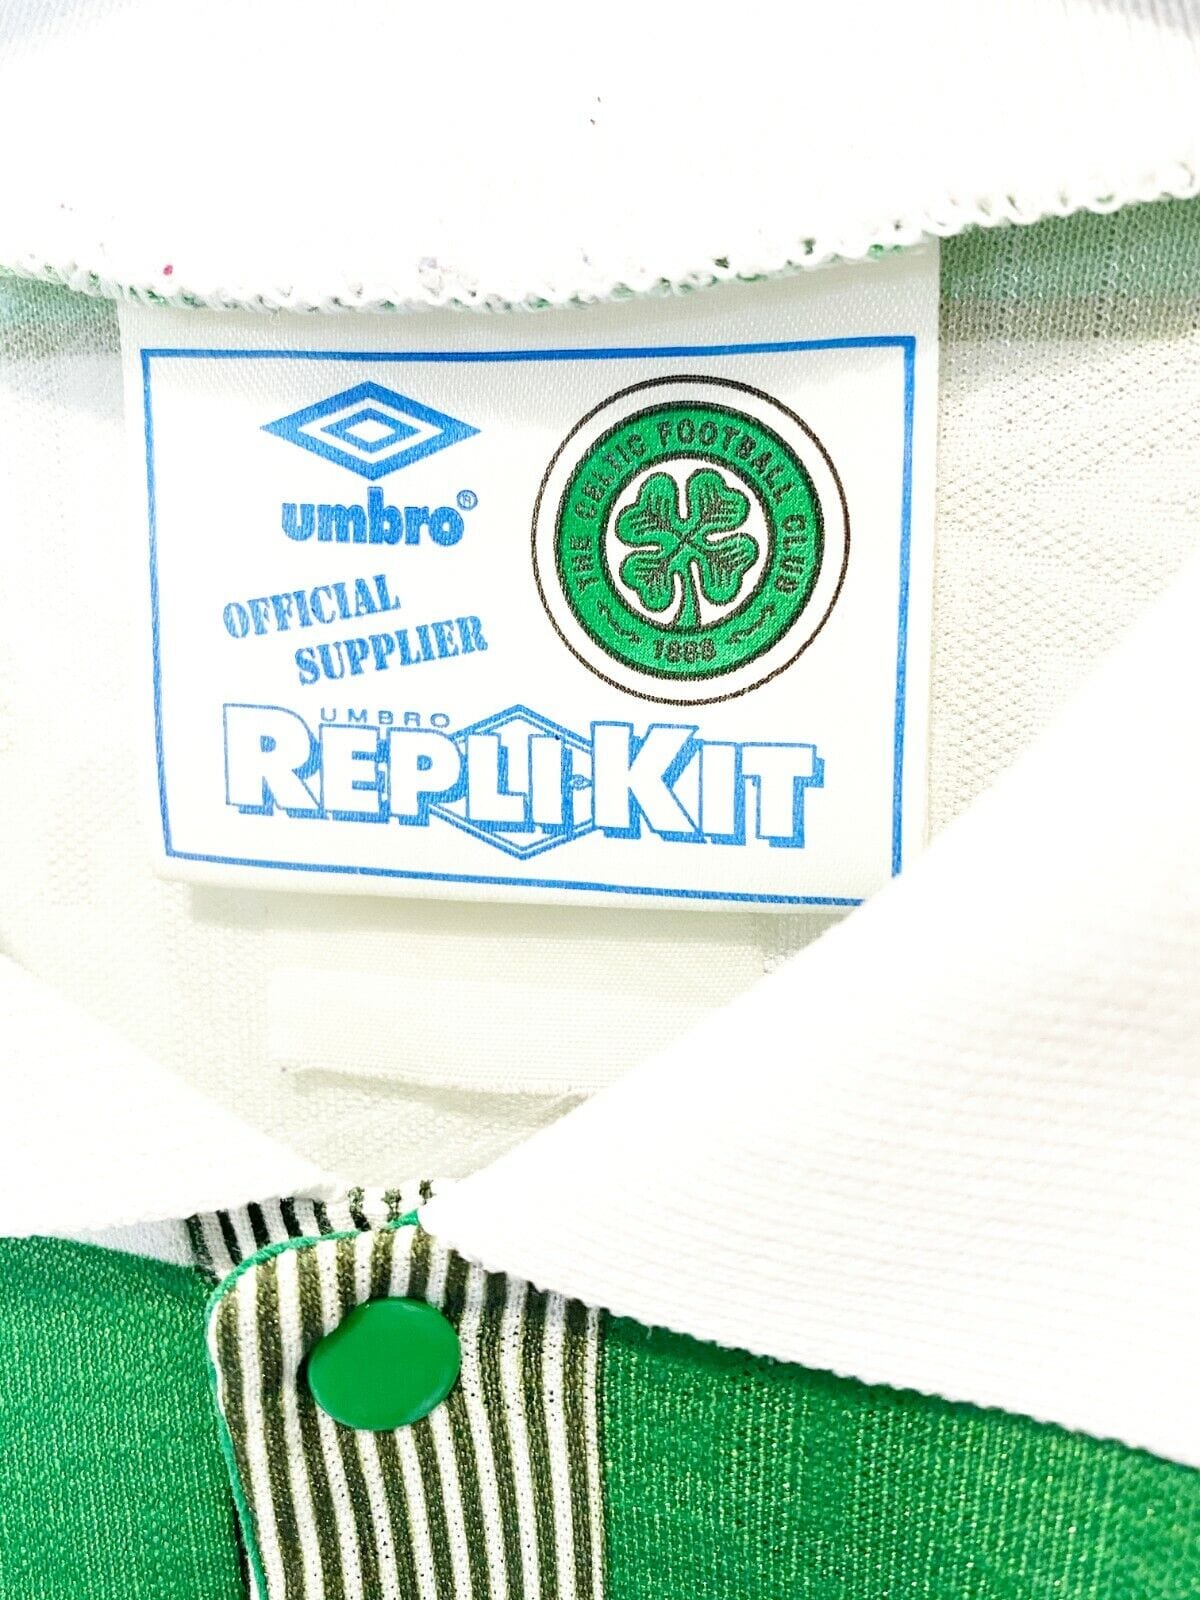 Retro Celtic Tops & Retro Celtic Shirts  Vintage Celtic Shirts – Classic  Football Kit